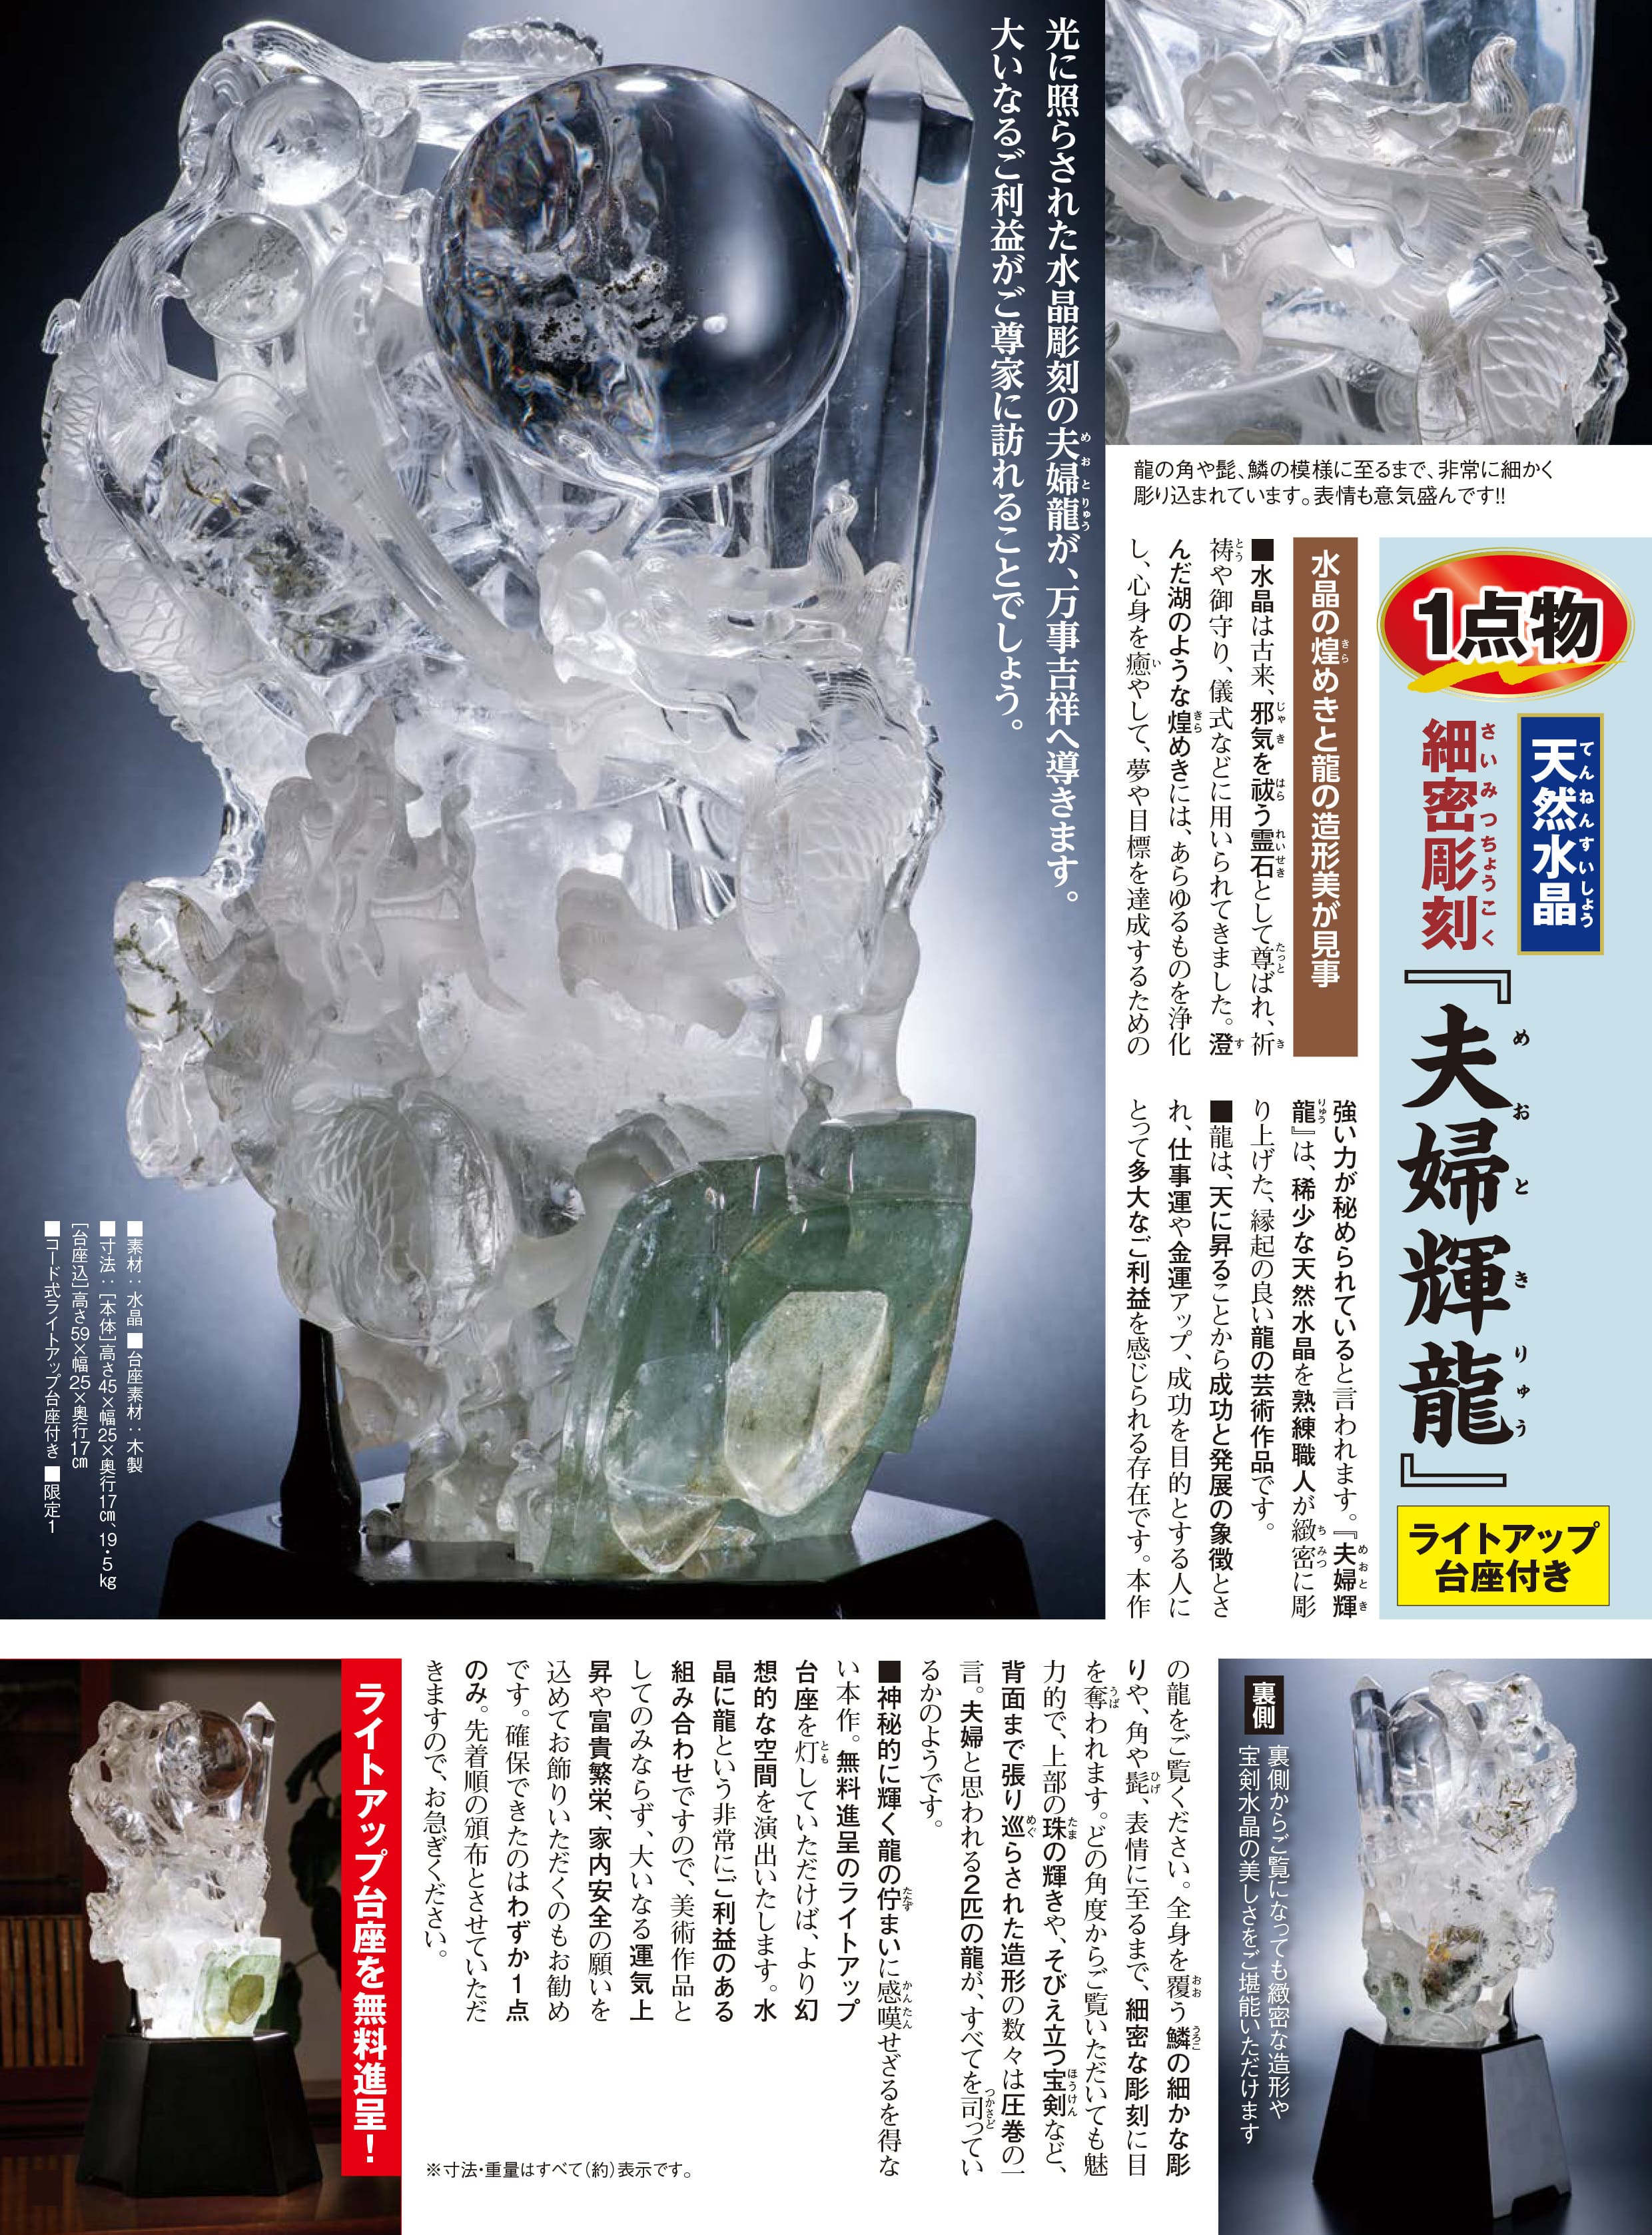 水晶の中に龍がハッキリ見える日本でも有名な霊能力者の先生から買った ...